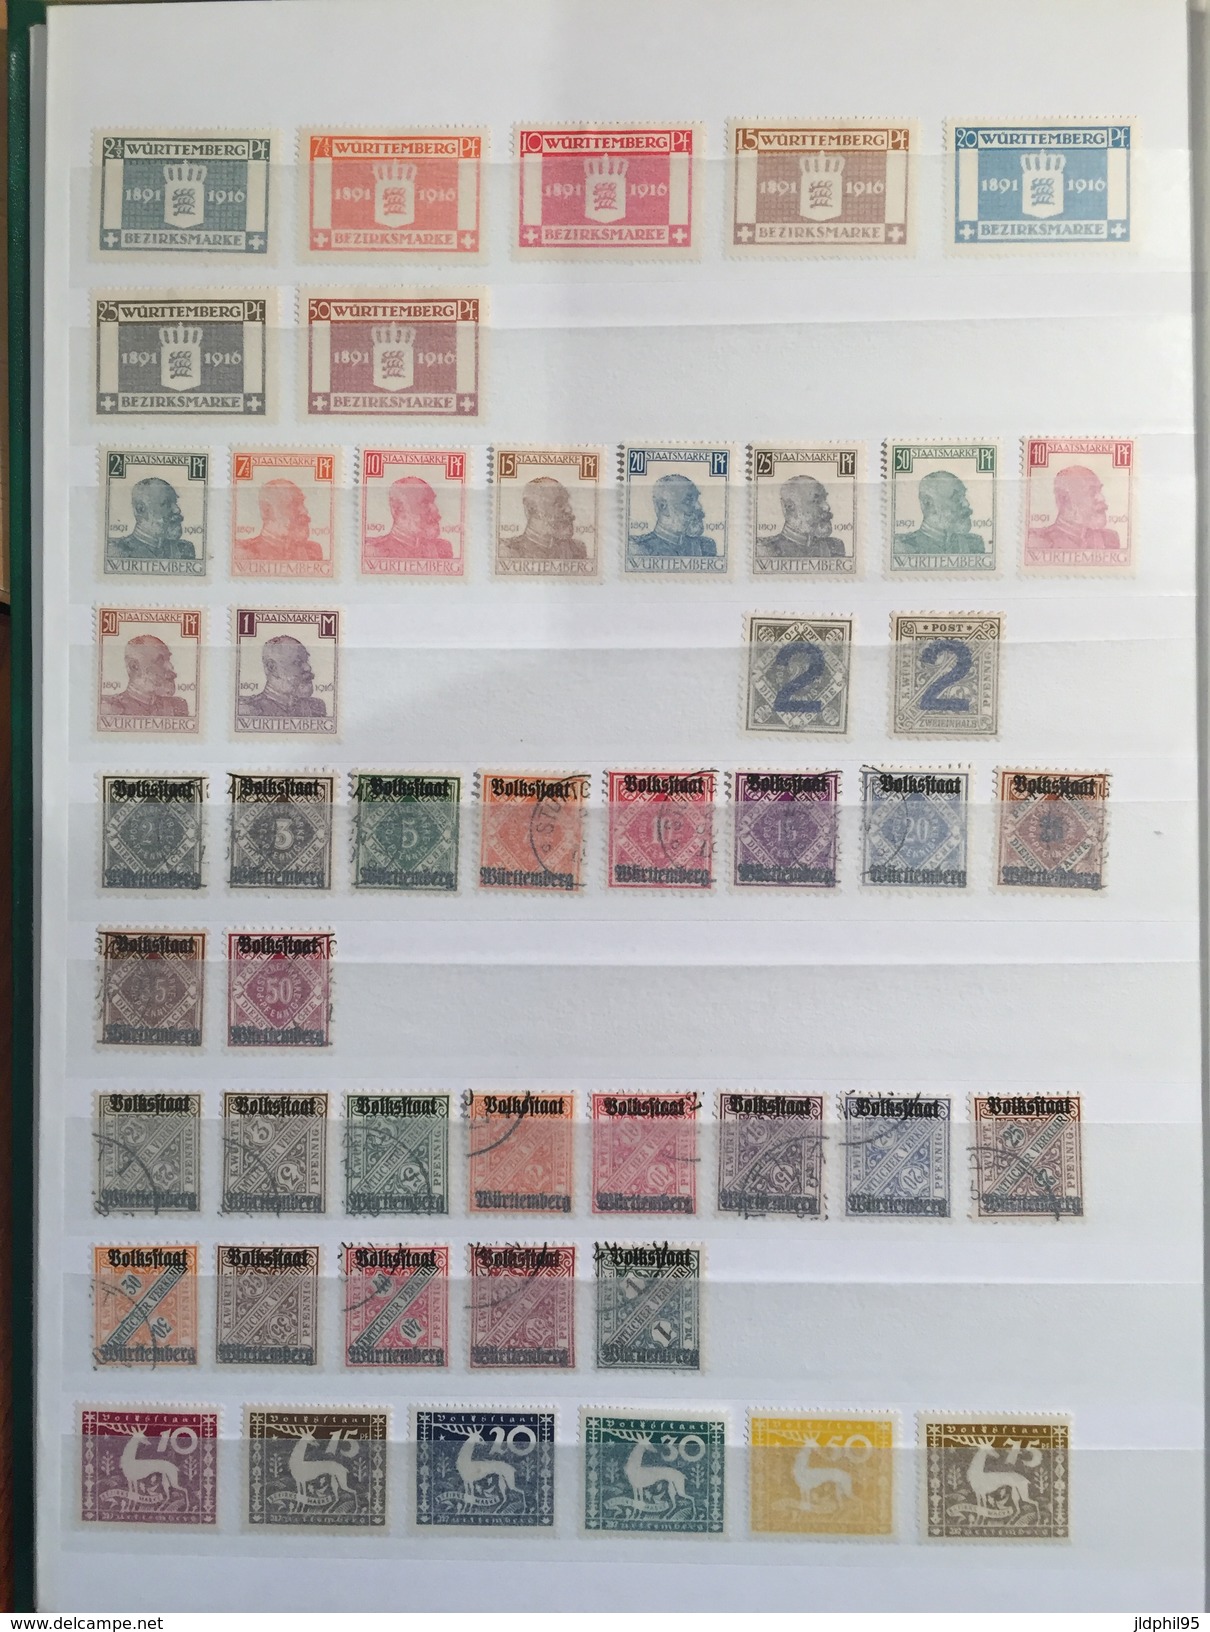 LOTS  - Albanie _  Allemagne -  + de 700 timbres, neuf ou oblitérés